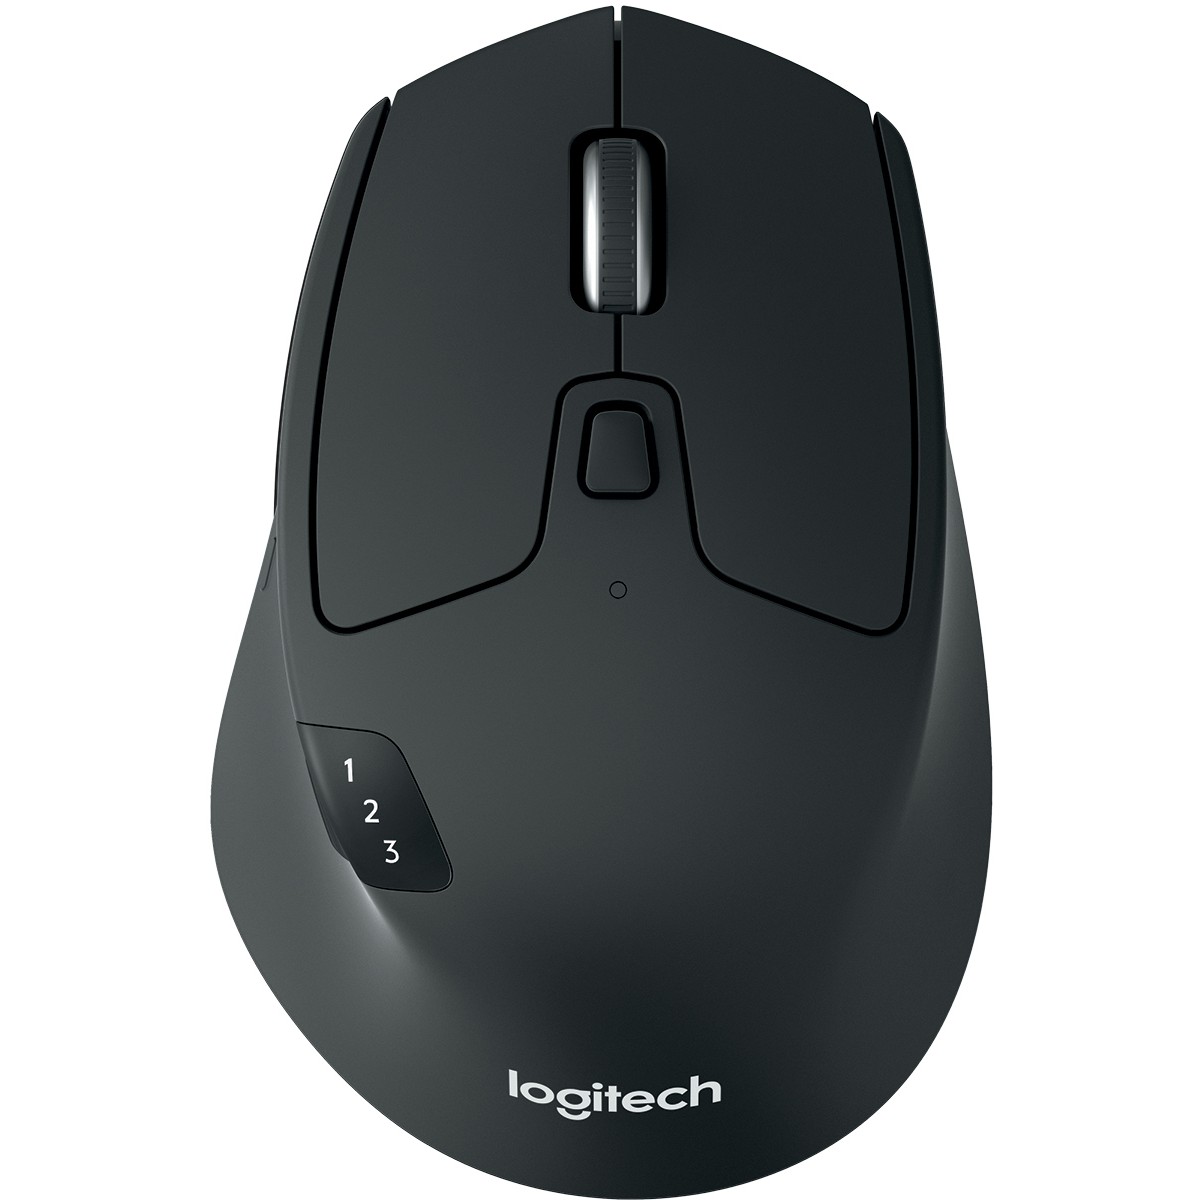 Logitech M720 mouse